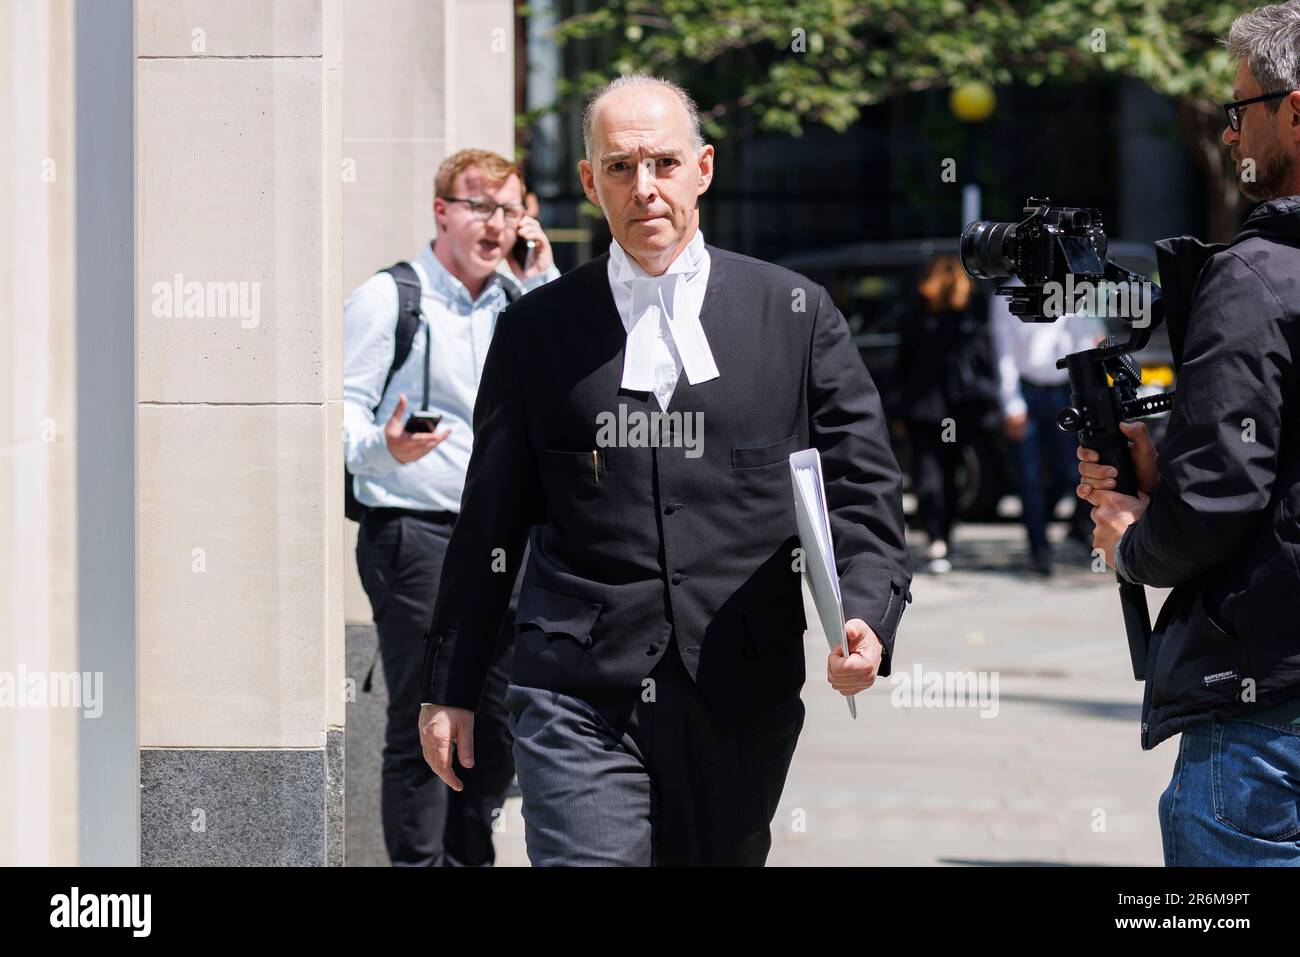 Andrew Green KC alla High Court oggi durante il terzo giorno di processo contro i quotidiani del Gruppo Mirror. Immagine ripresa il 7th giugno 2023. © Belinda Jiao Foto Stock